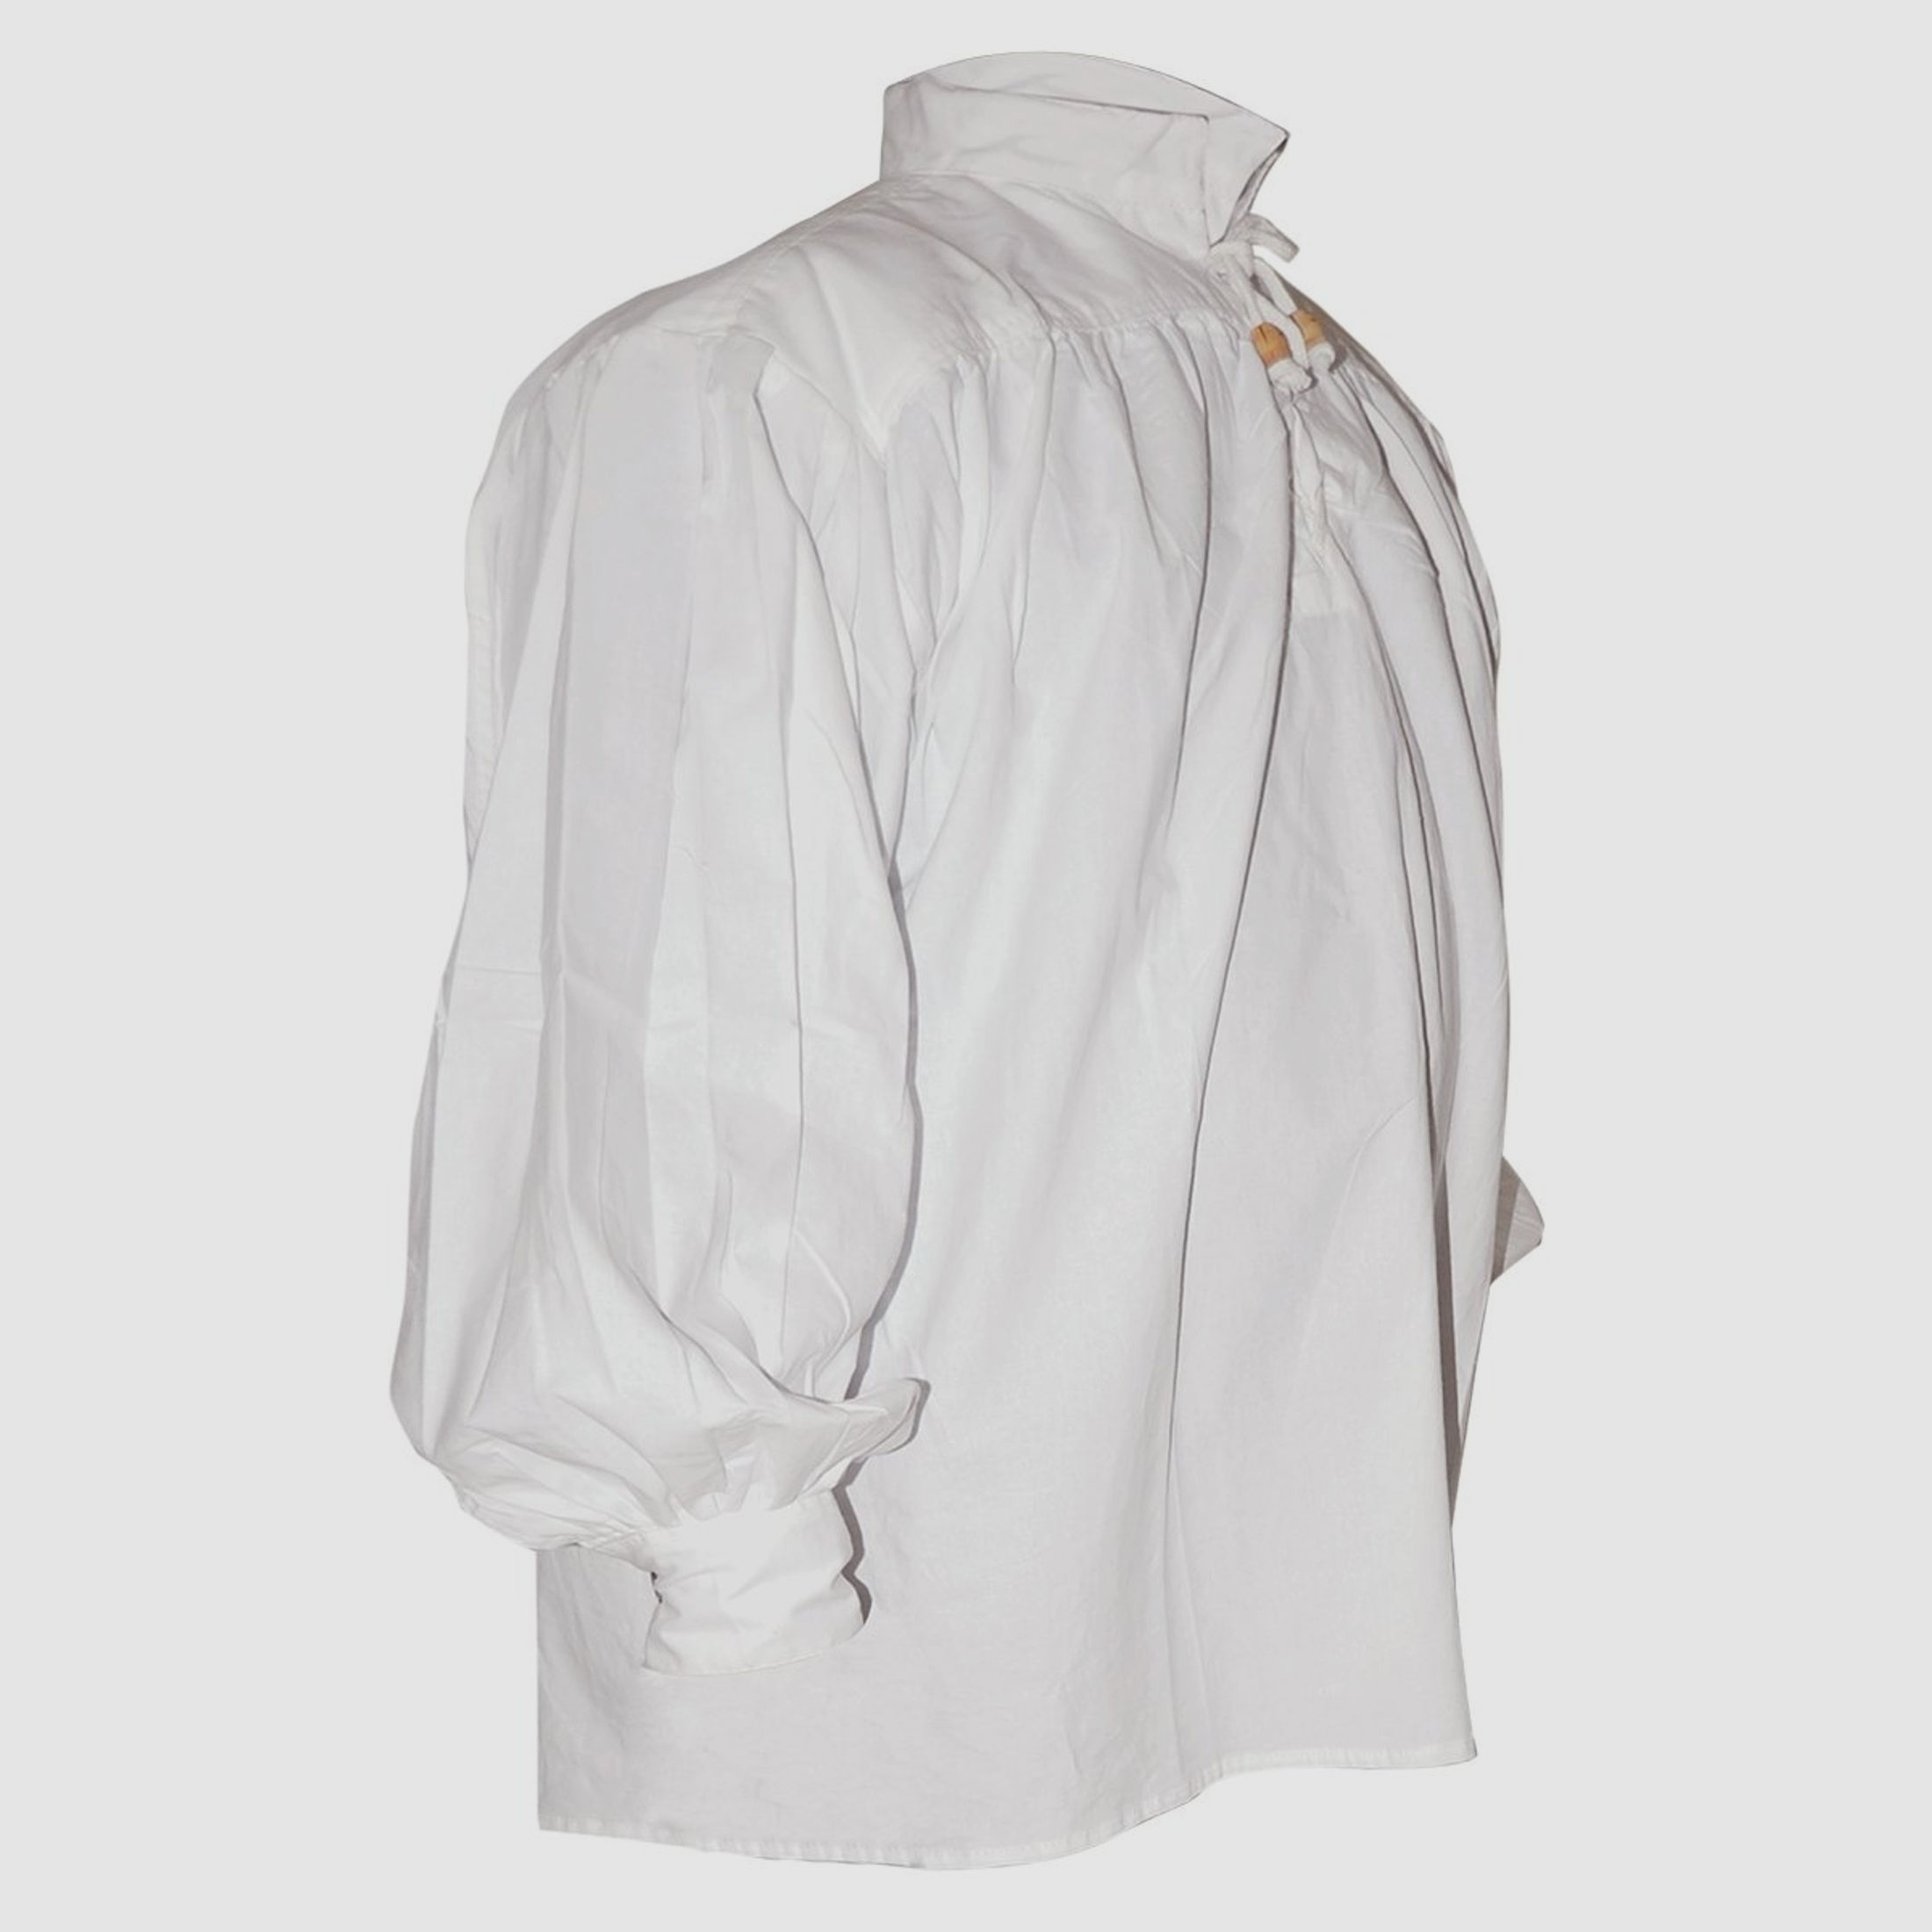 Baumwollhemd, kragenlos, Spitze mit Schnüren, Weiß, Größe XL | 71610XL